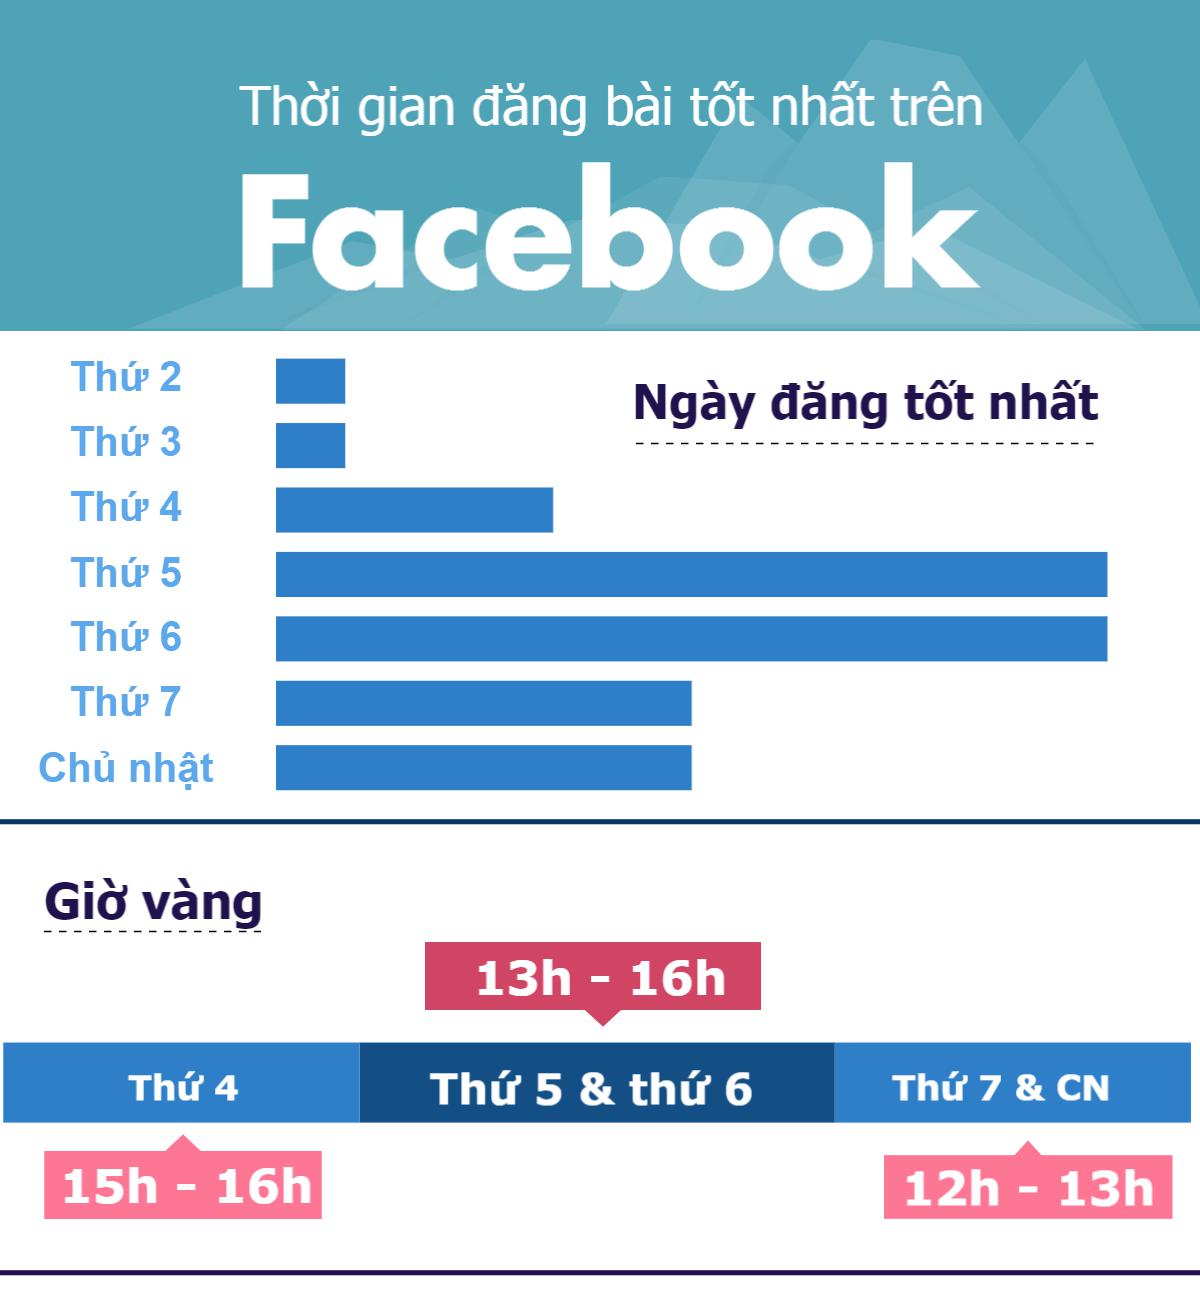 [Infographic] Tiết lộ giờ vàng câu like Facebook - 1